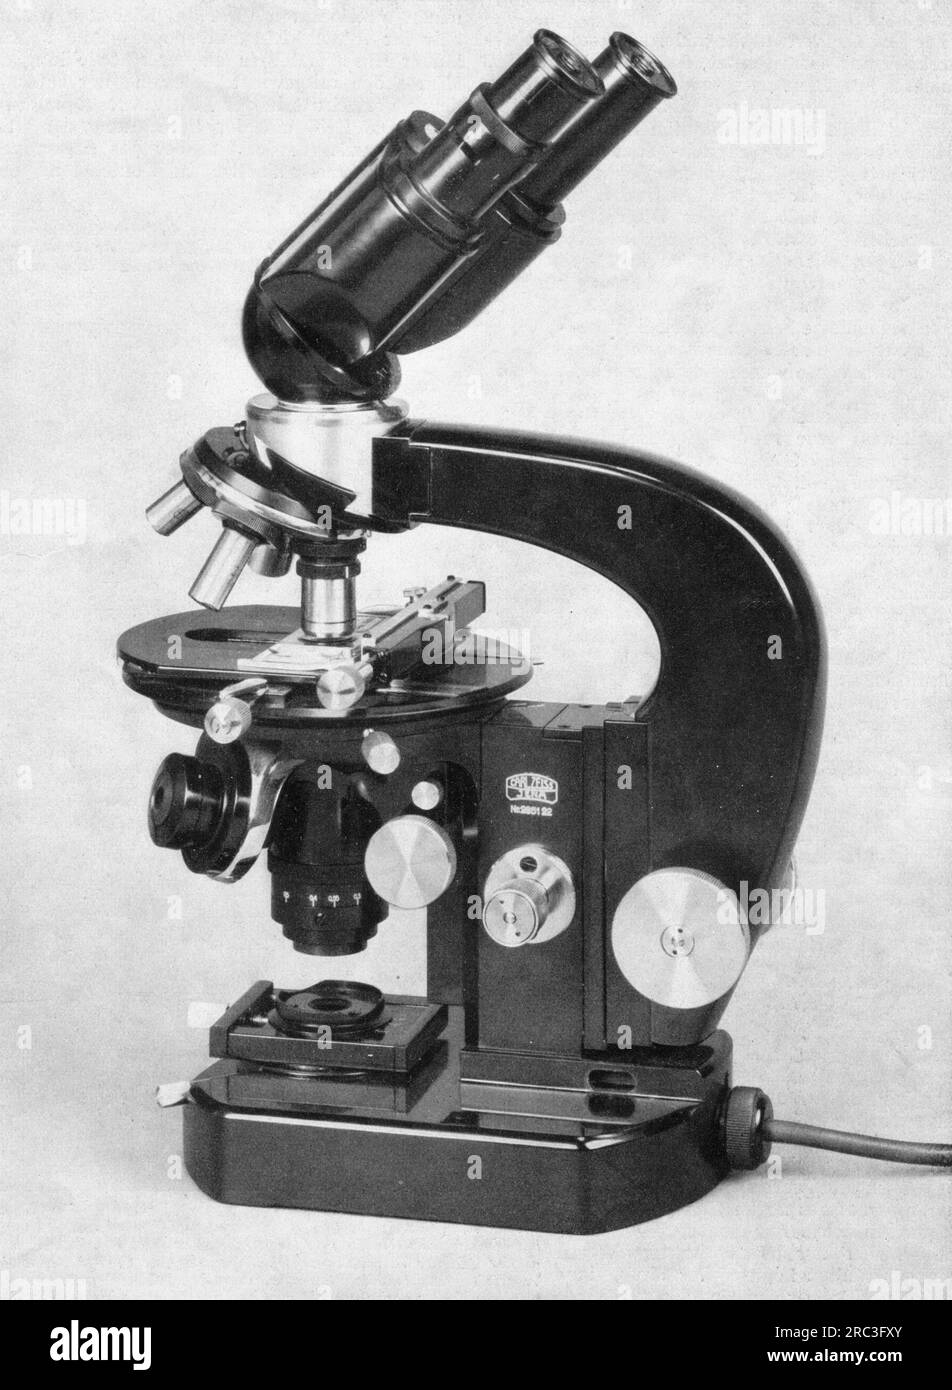 Technik, Mikroskop, biokulares Forschungsmikroskop Lumipan, mit integrierter Lichtquelle in der Basis, Carl Zeiss ®, Jena, 1939, NUR REDAKTIONELLE VERWENDUNG Stockfoto